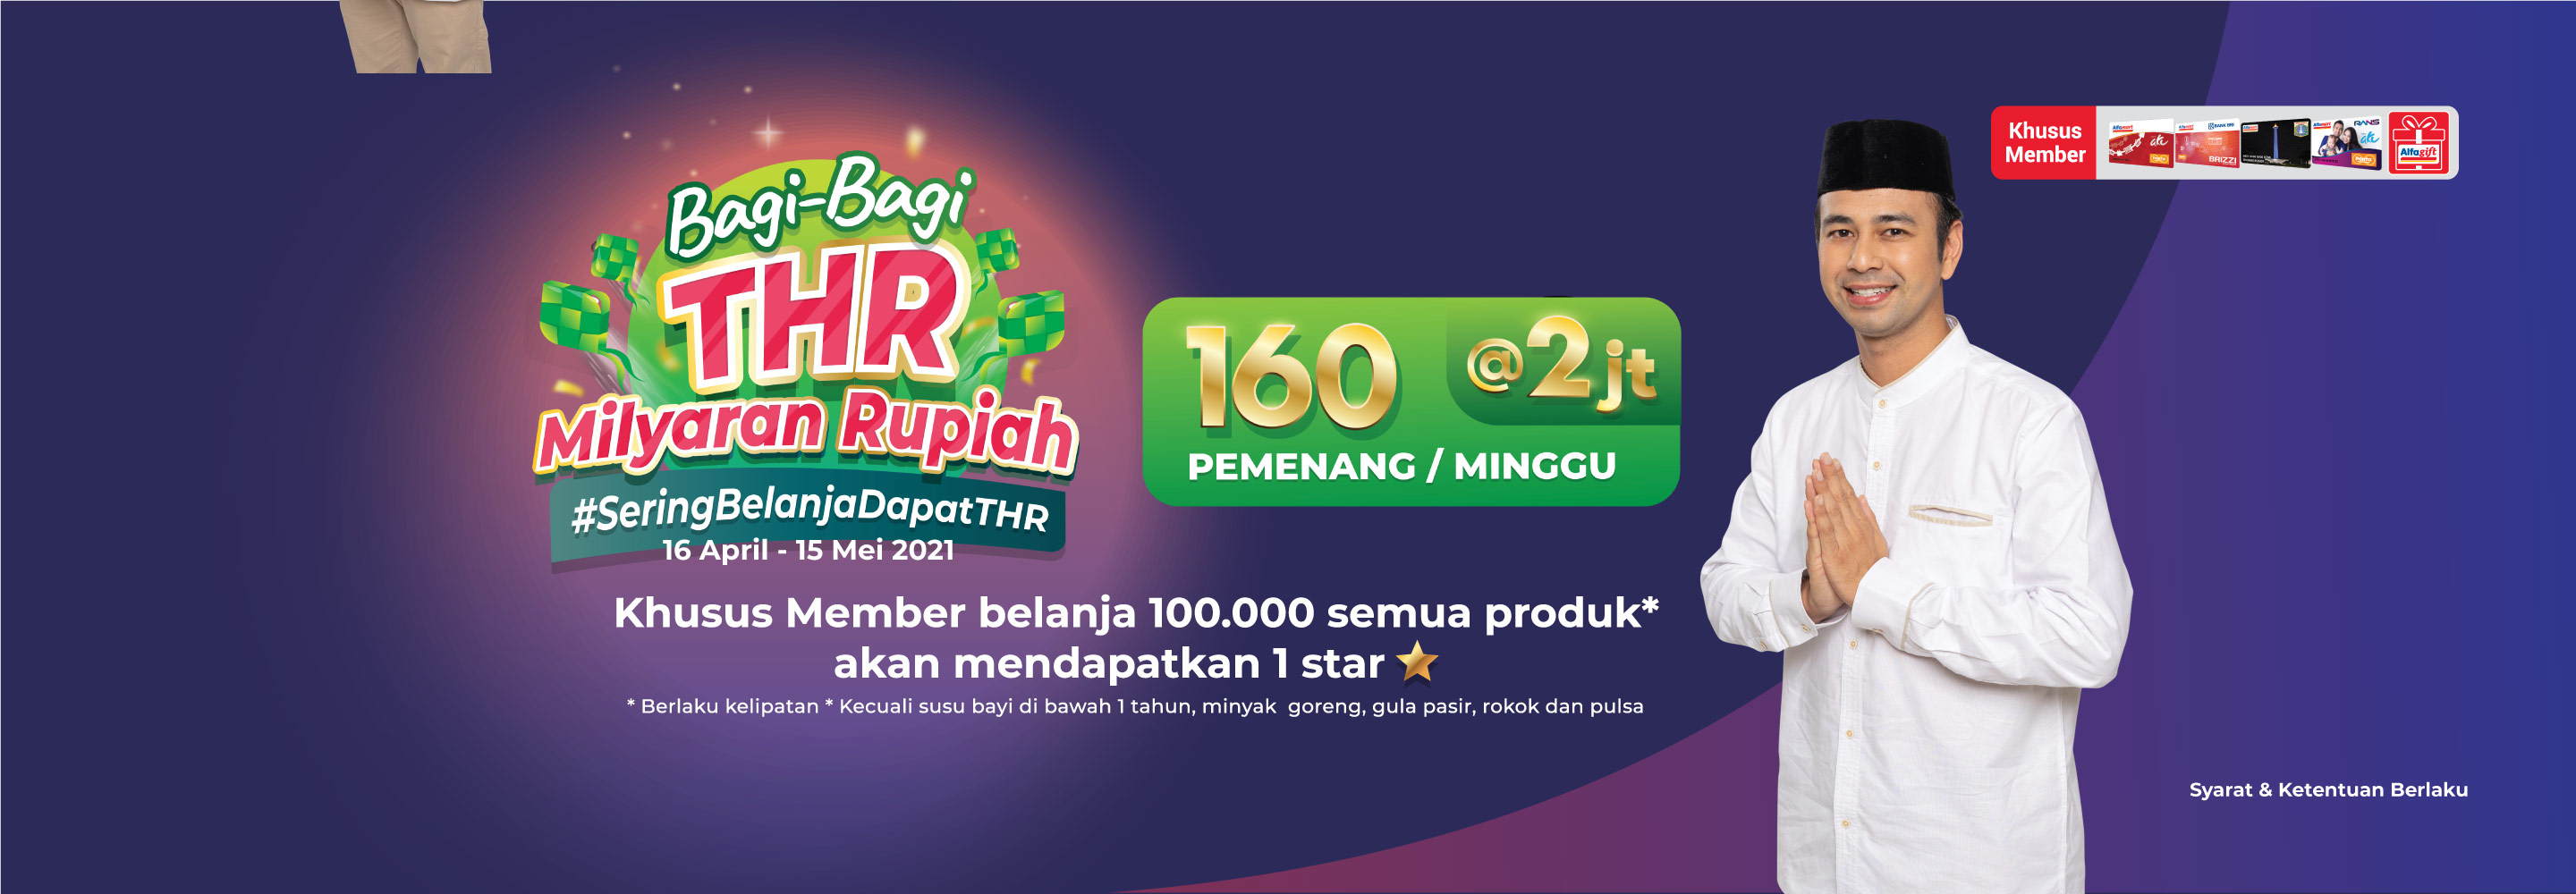 Promo Alfamart Bagi - Bagi THR Milyaran Rupiah Alfamart